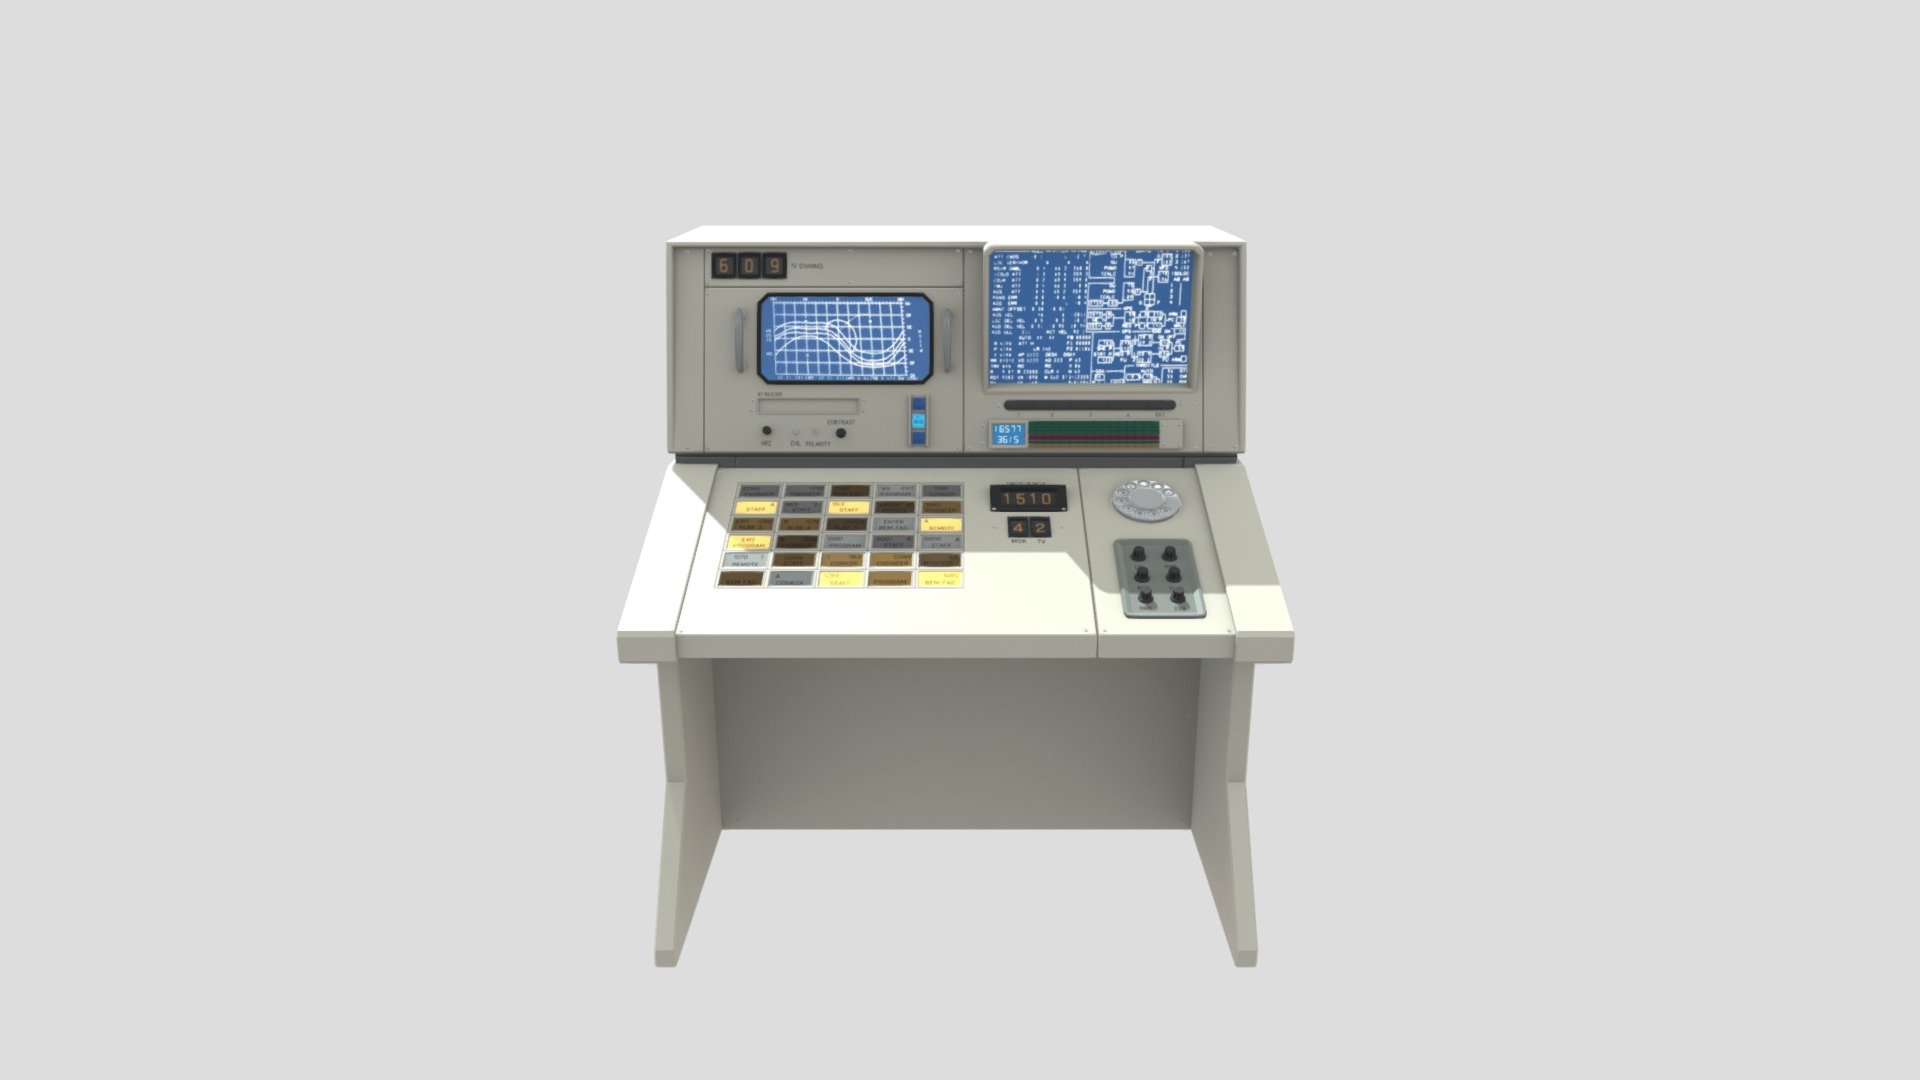 Old Nasa Computer